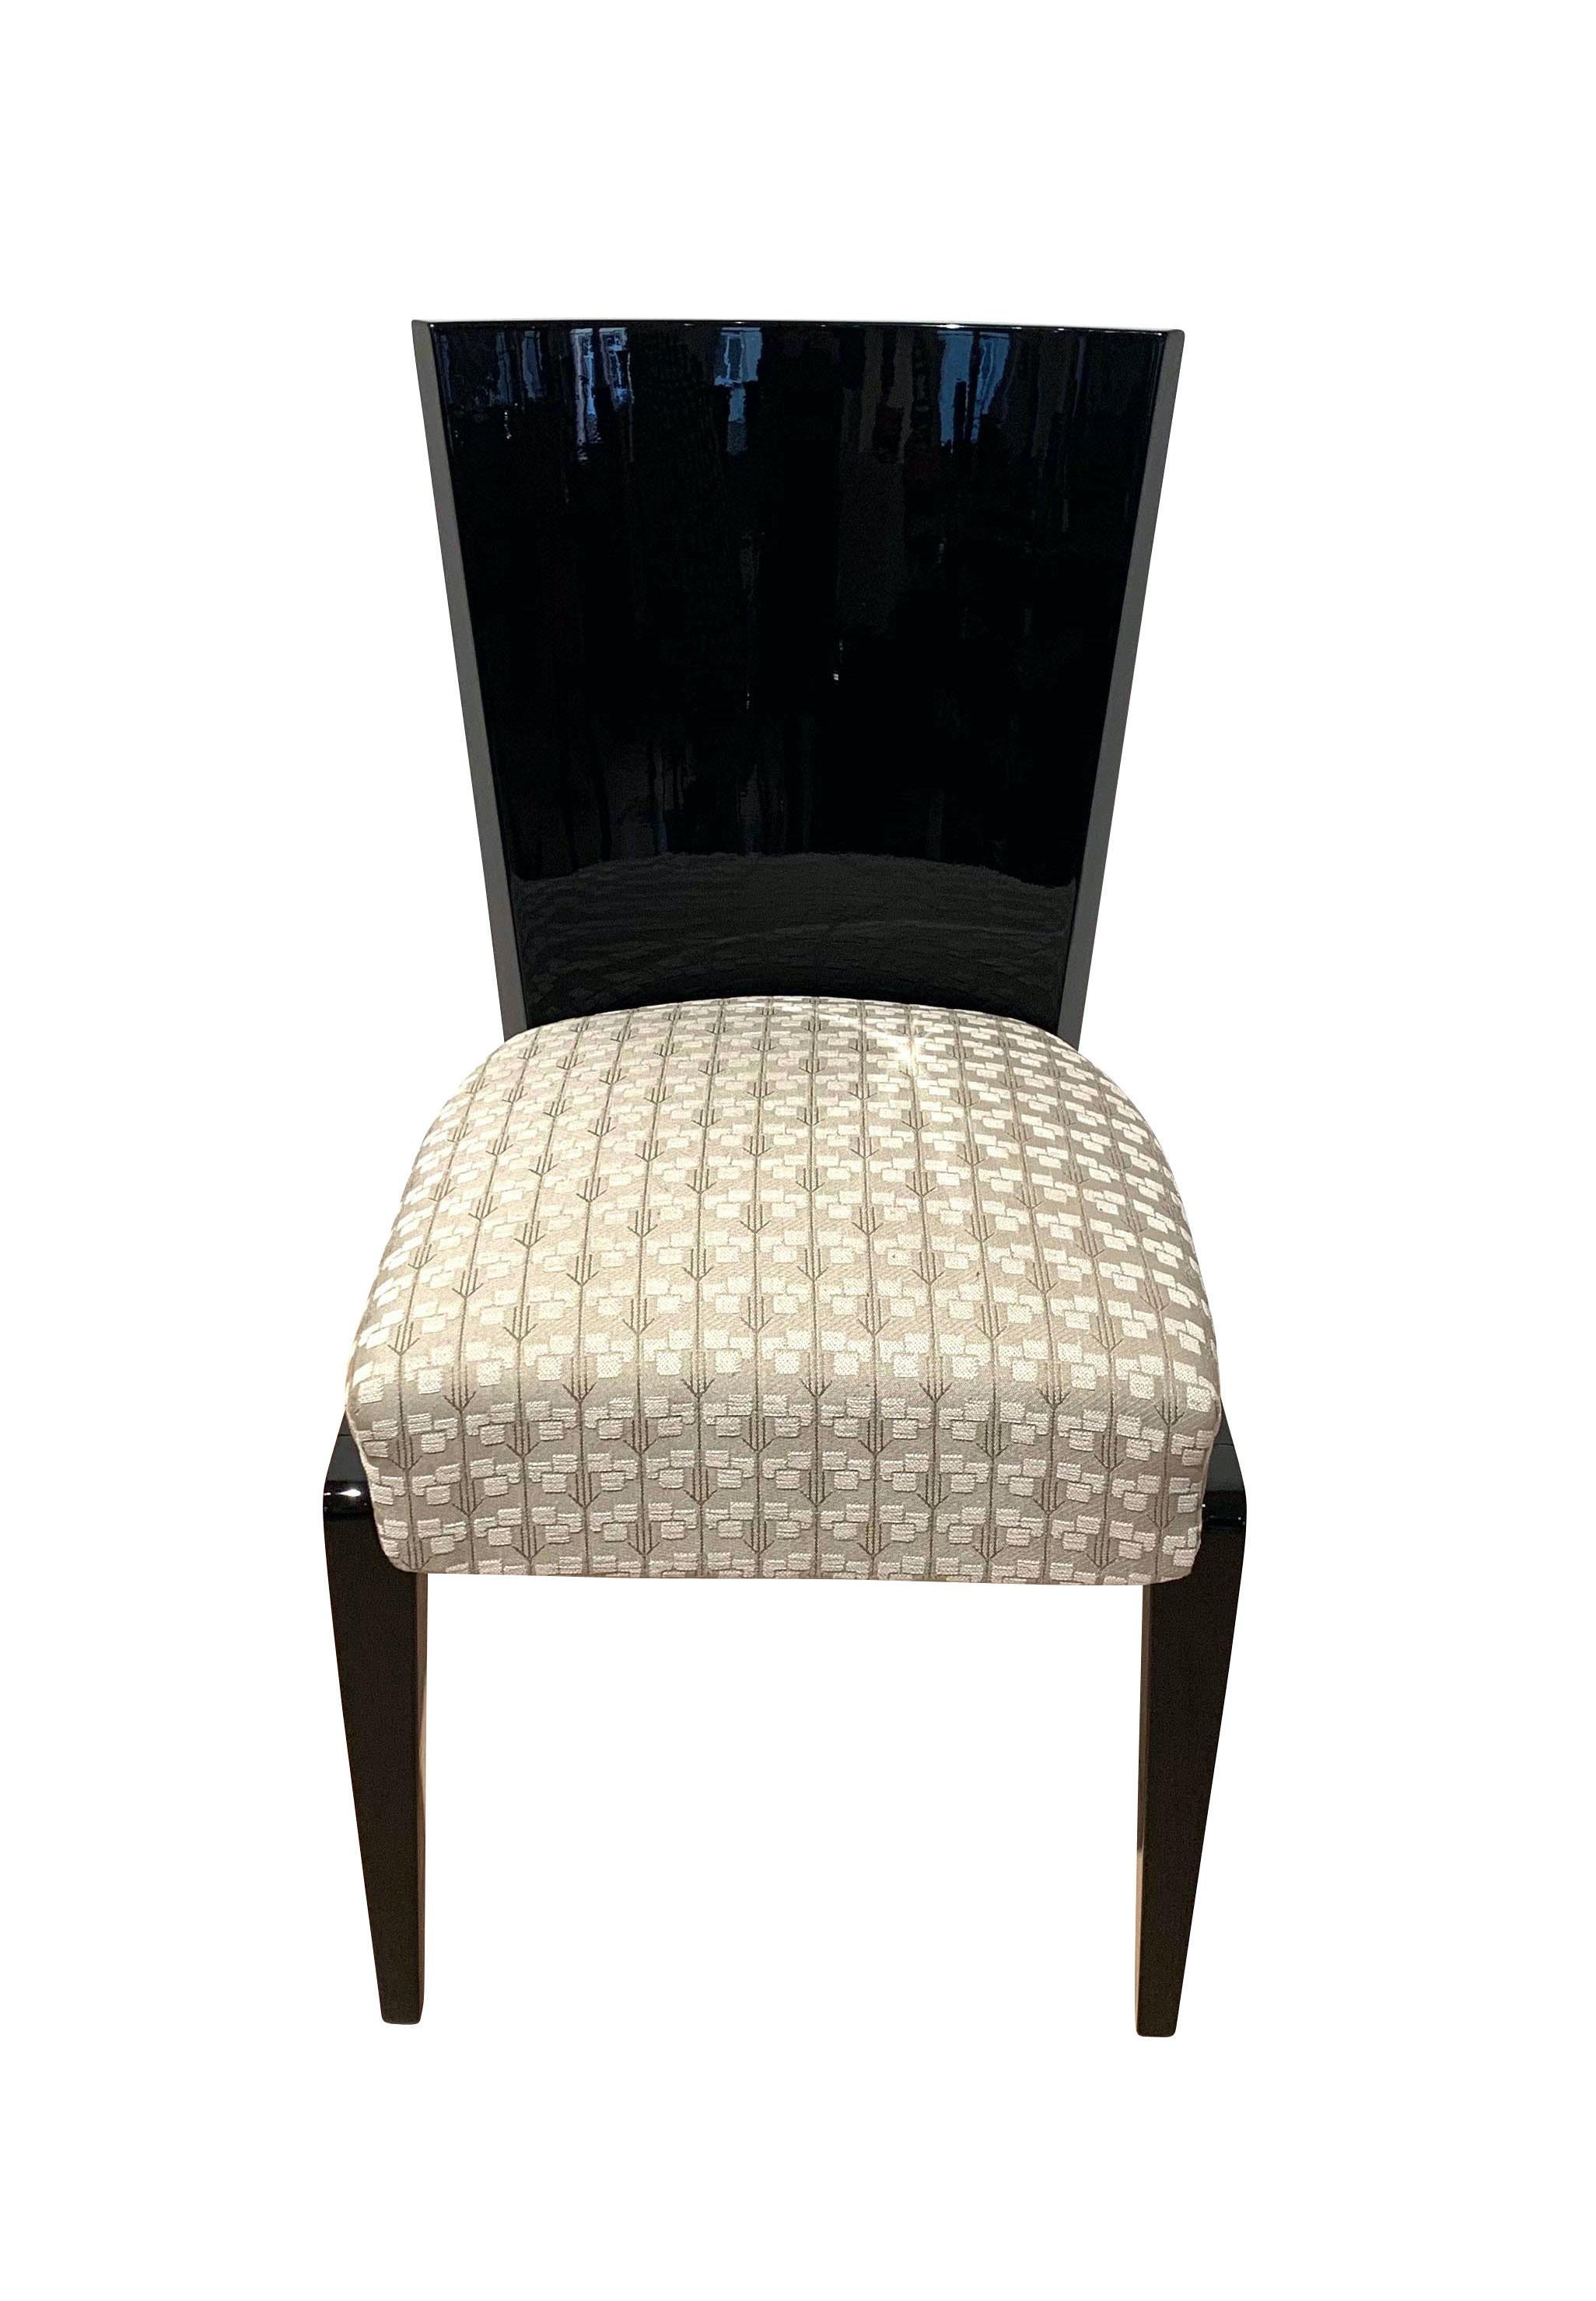 Magnifique chaise d'appoint Art déco de France, vers 1930.
Design moderne et élégant avec de grandes proportions. Panneau arrière haut et incurvé.
Dessous en bois dur, laqué avec une laque piano noire et poli brillant.Tissu d'ameublement : Tissu